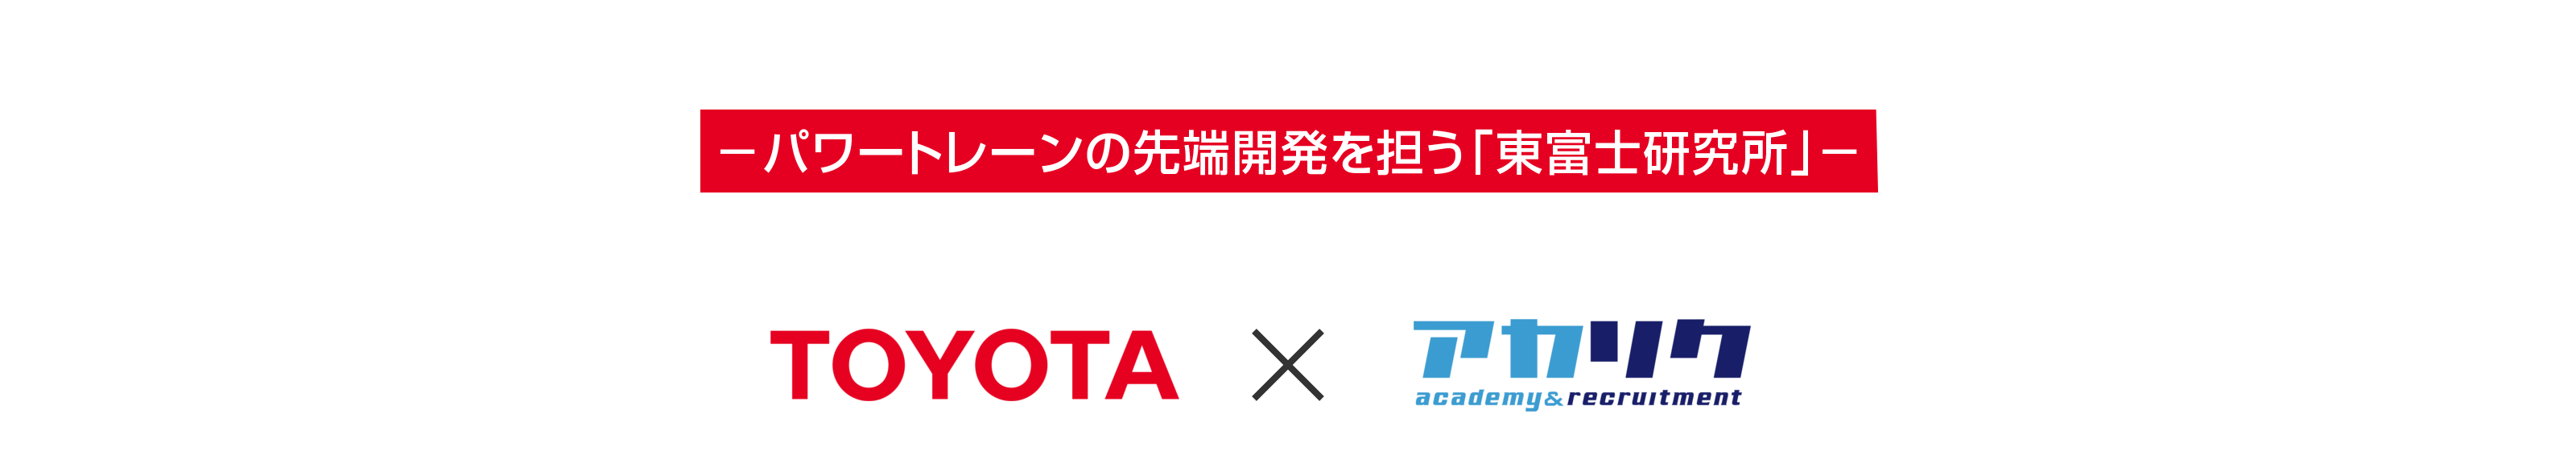 トヨタ自動車×アカリク 博士・PD限定 特別選考会